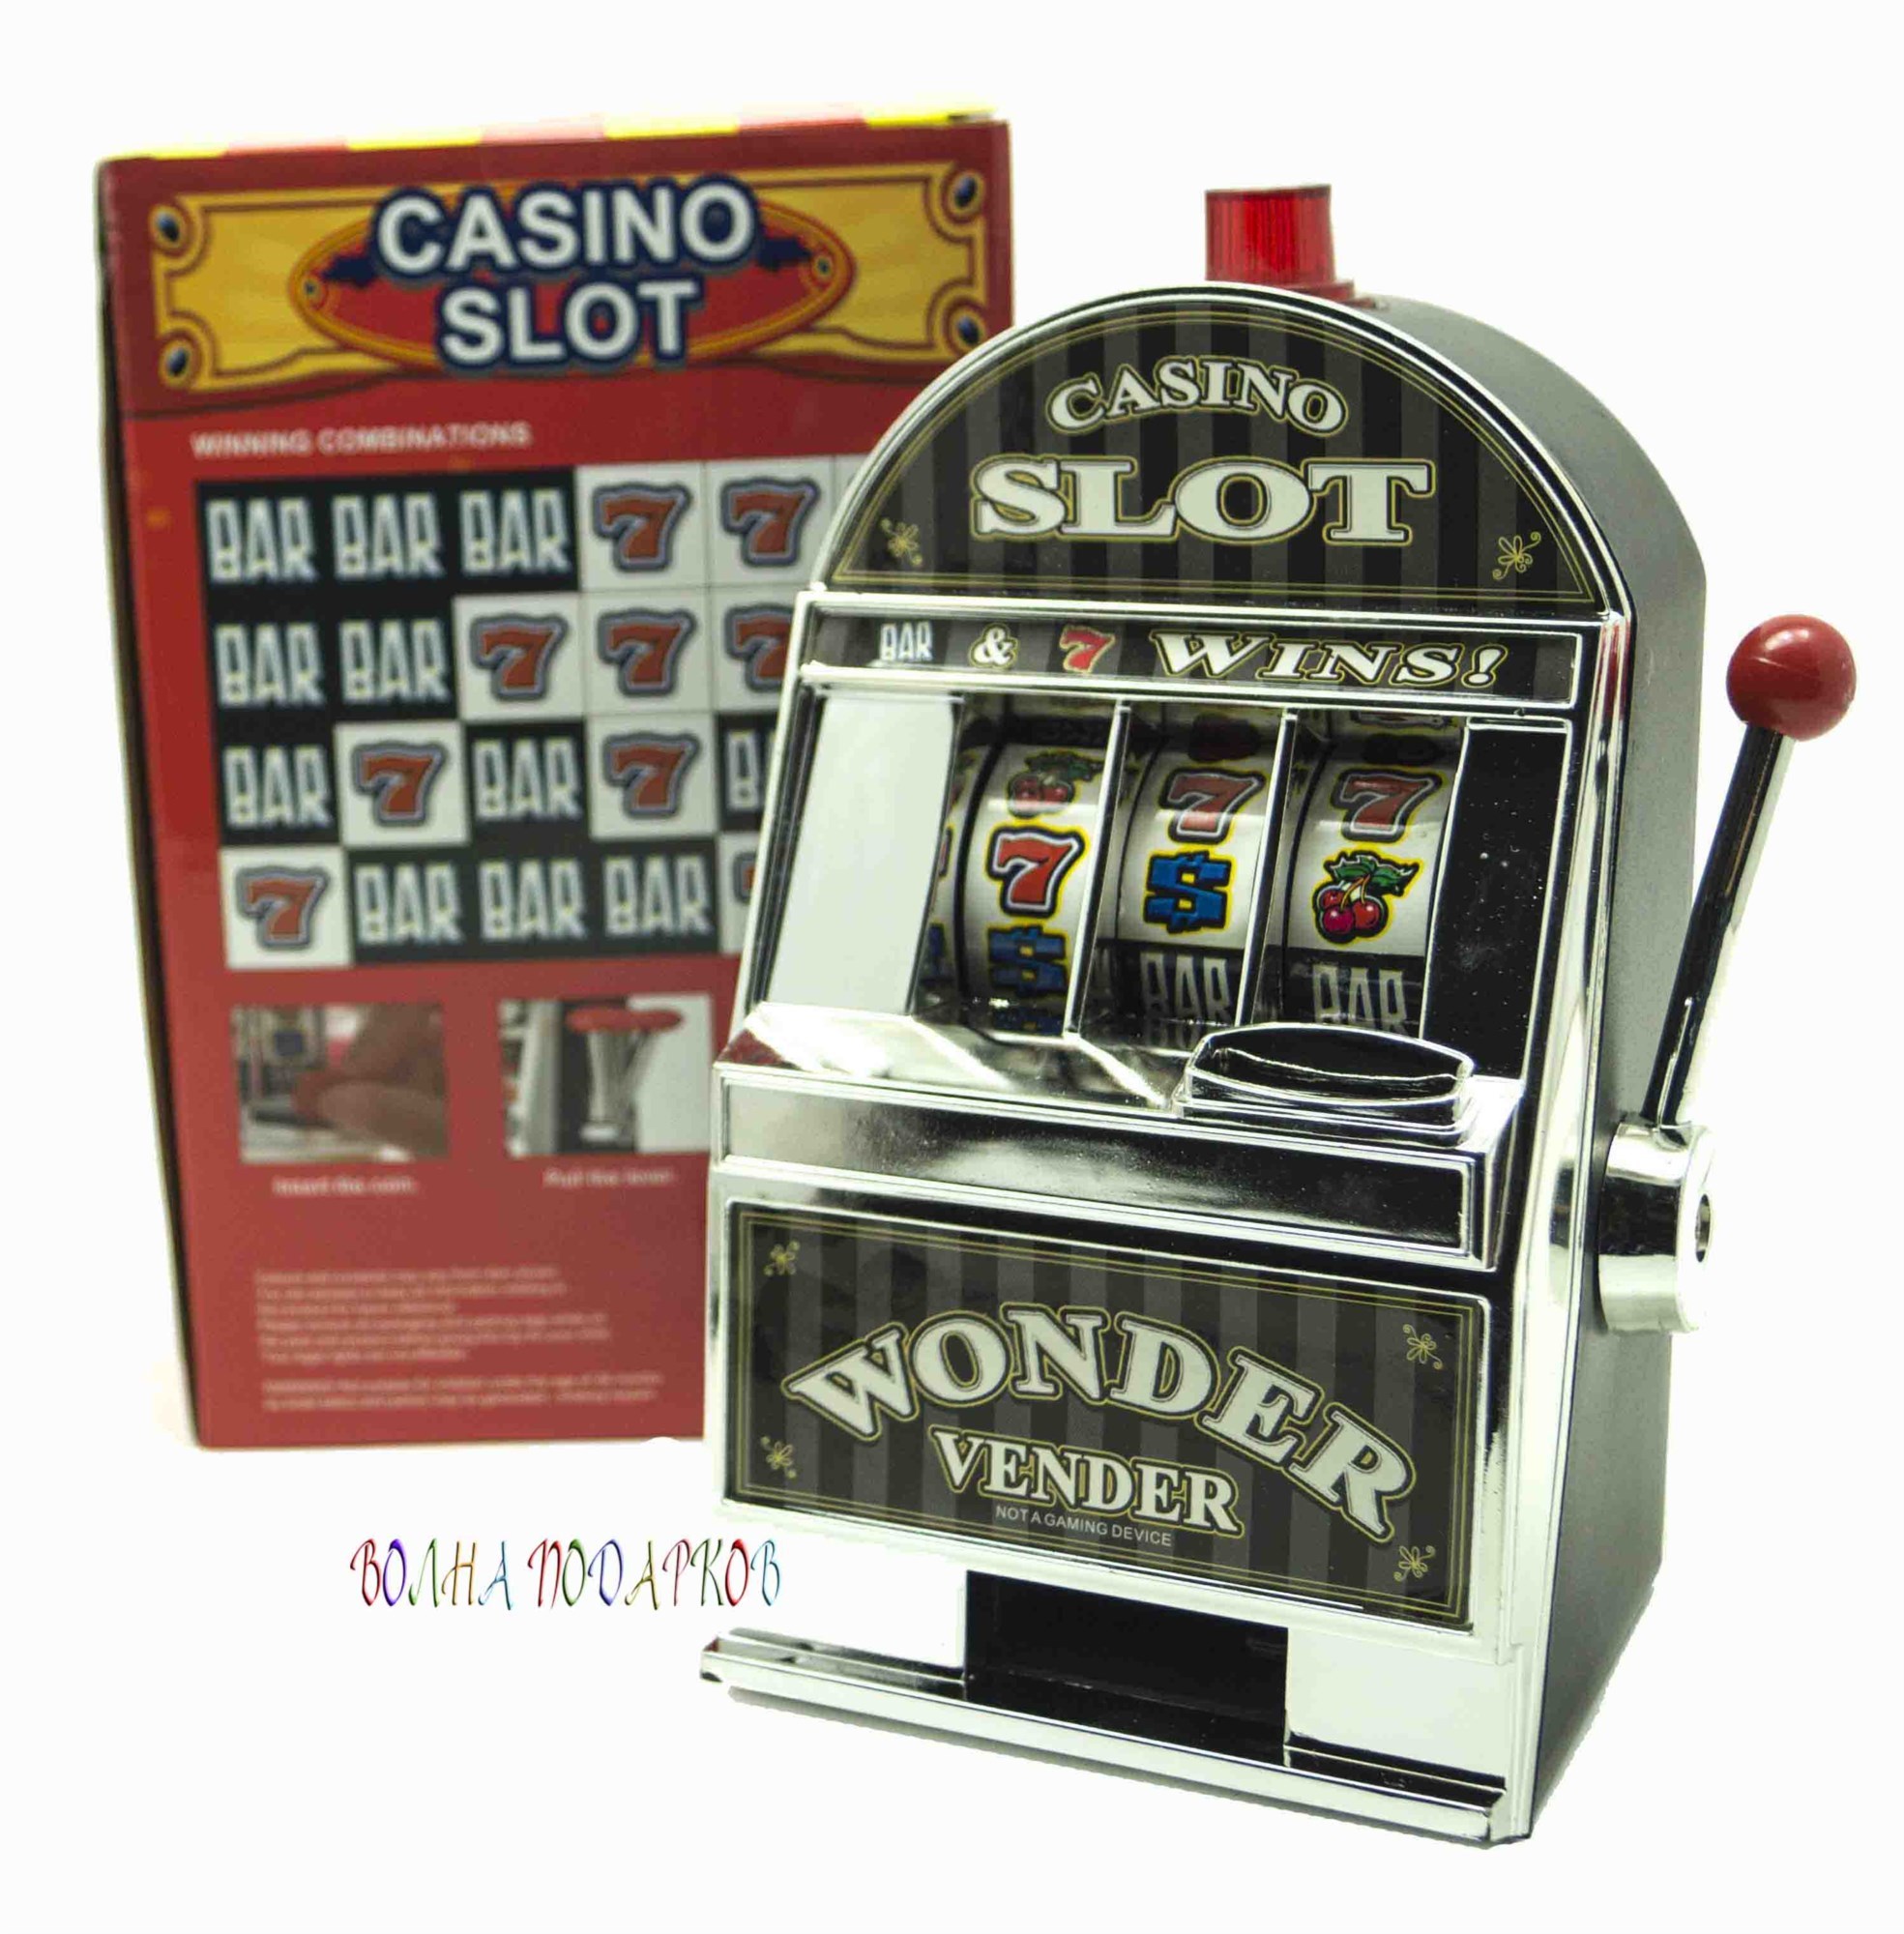 Piggy Bank (Свинья копилка) от Belatra — игровой автомат, играть в слот бесплатно, без регистрации